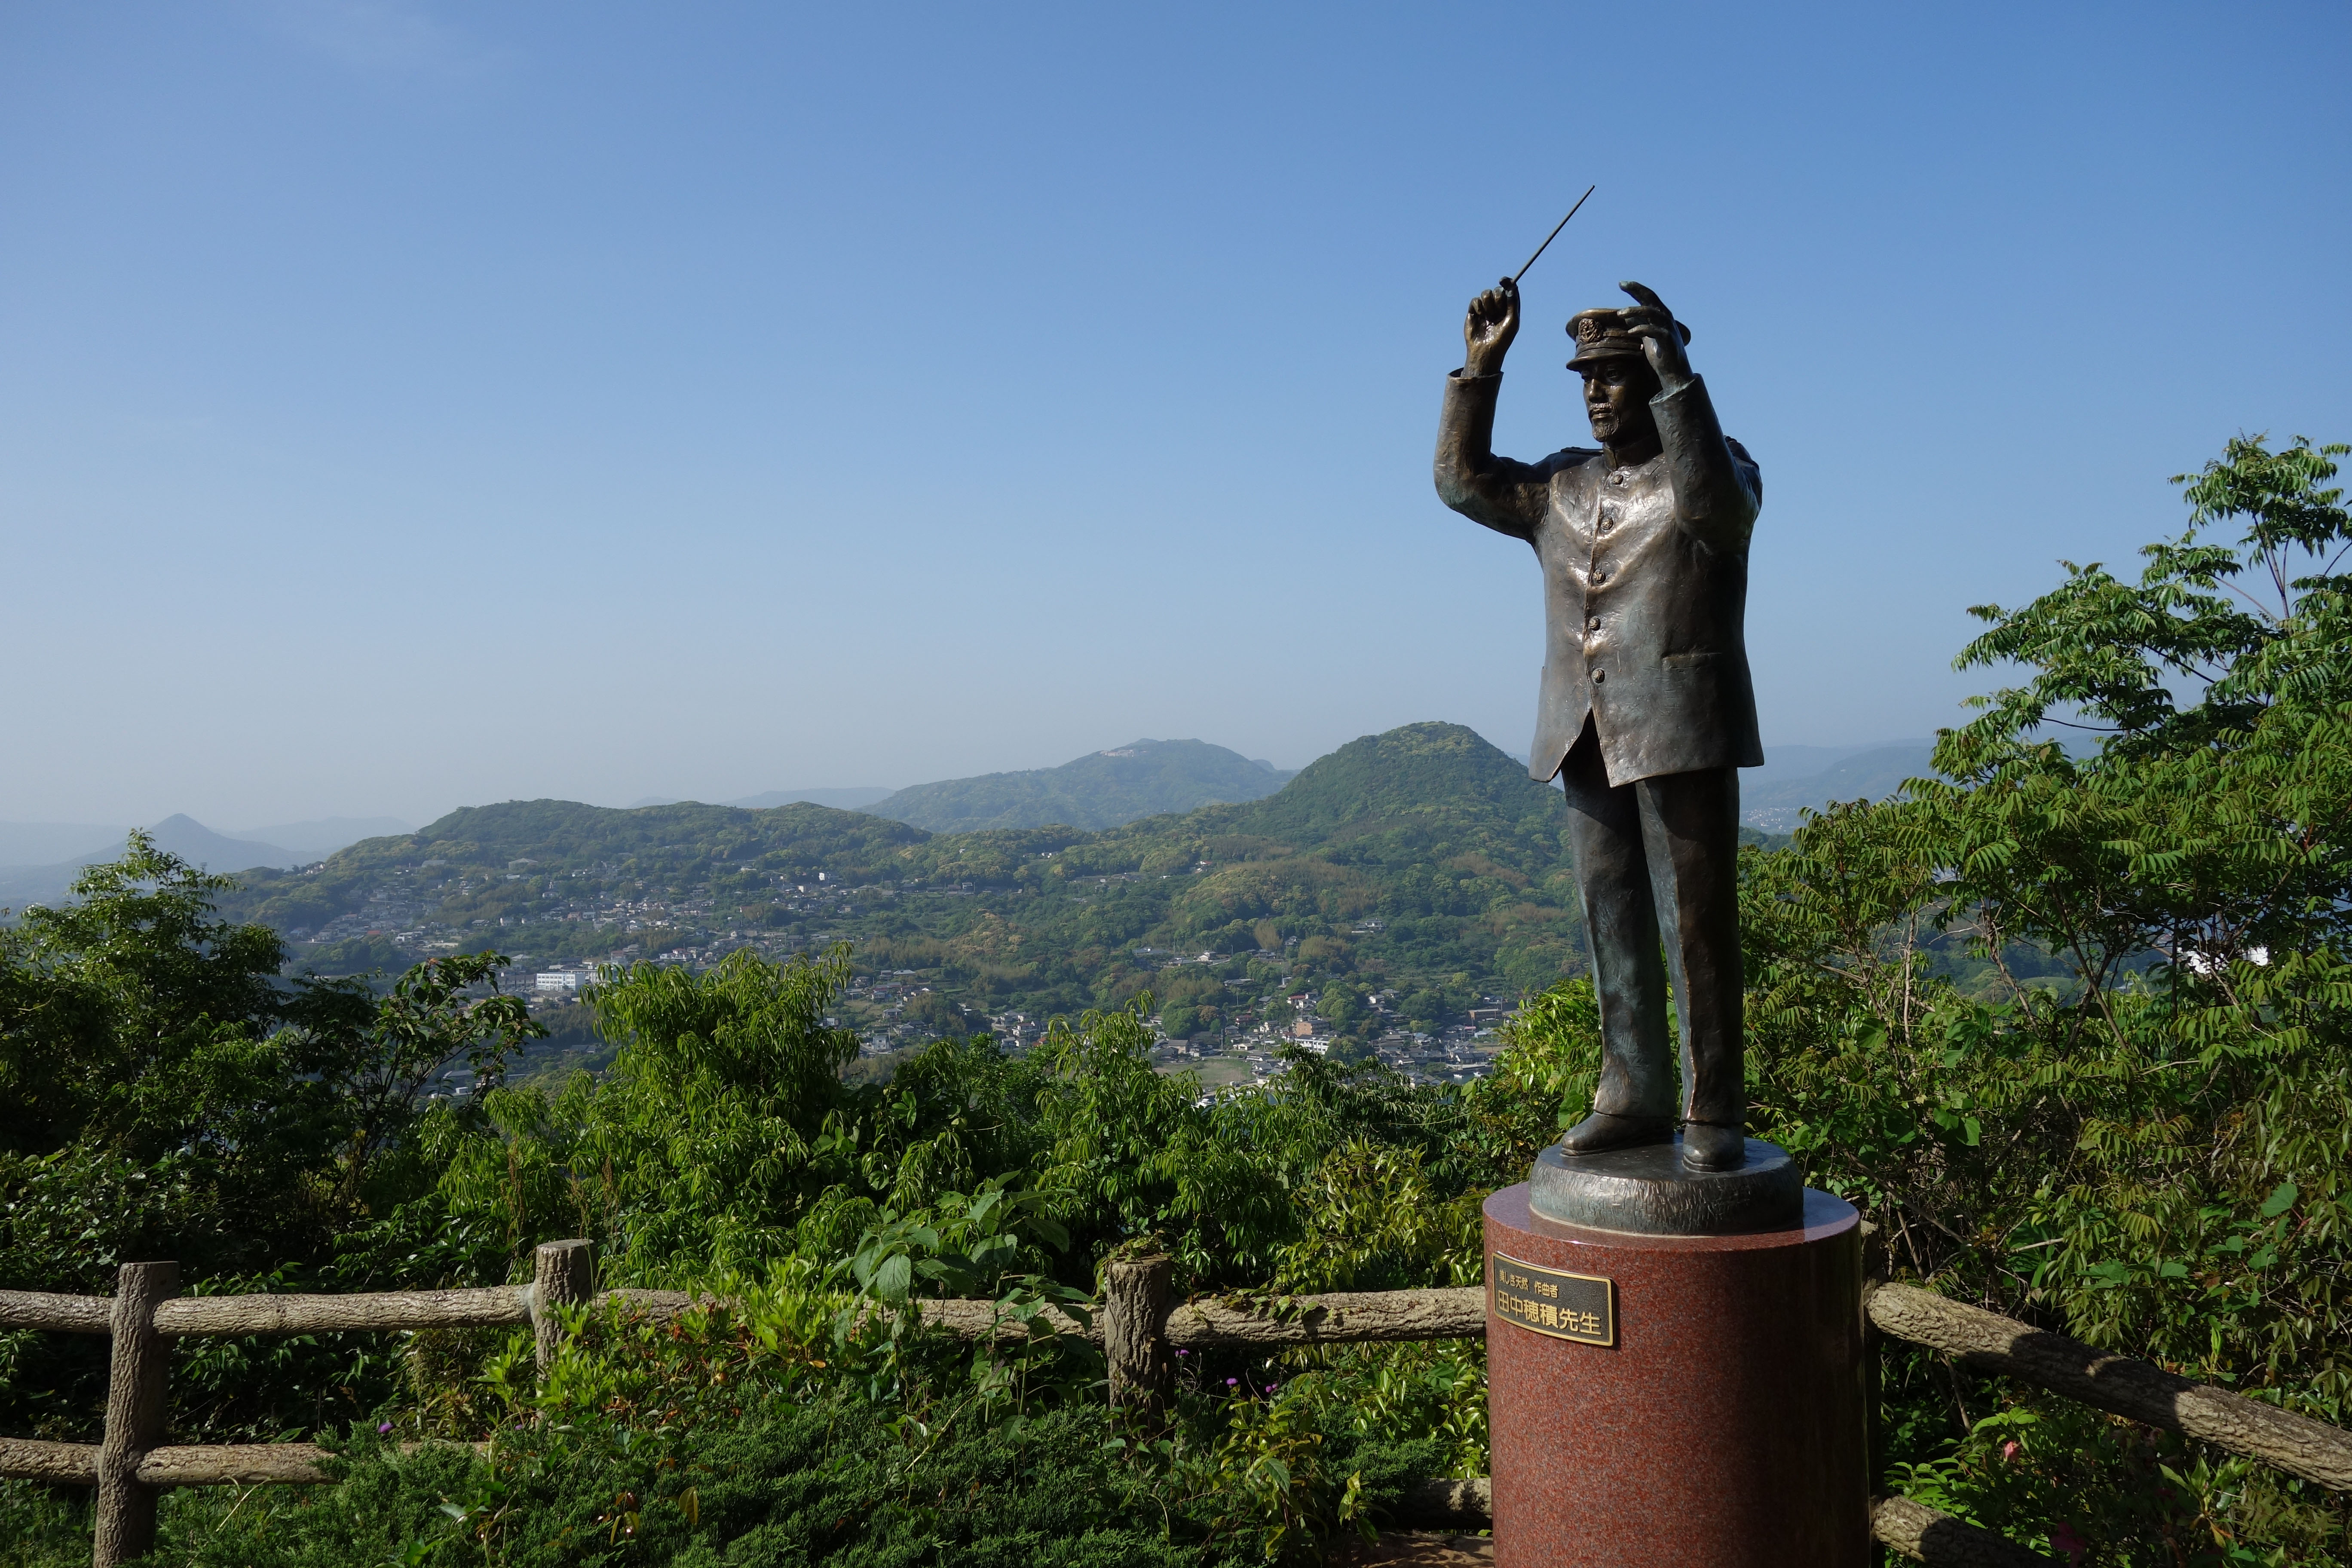 田中穂積の像 Statue of Hozumi Tanaka